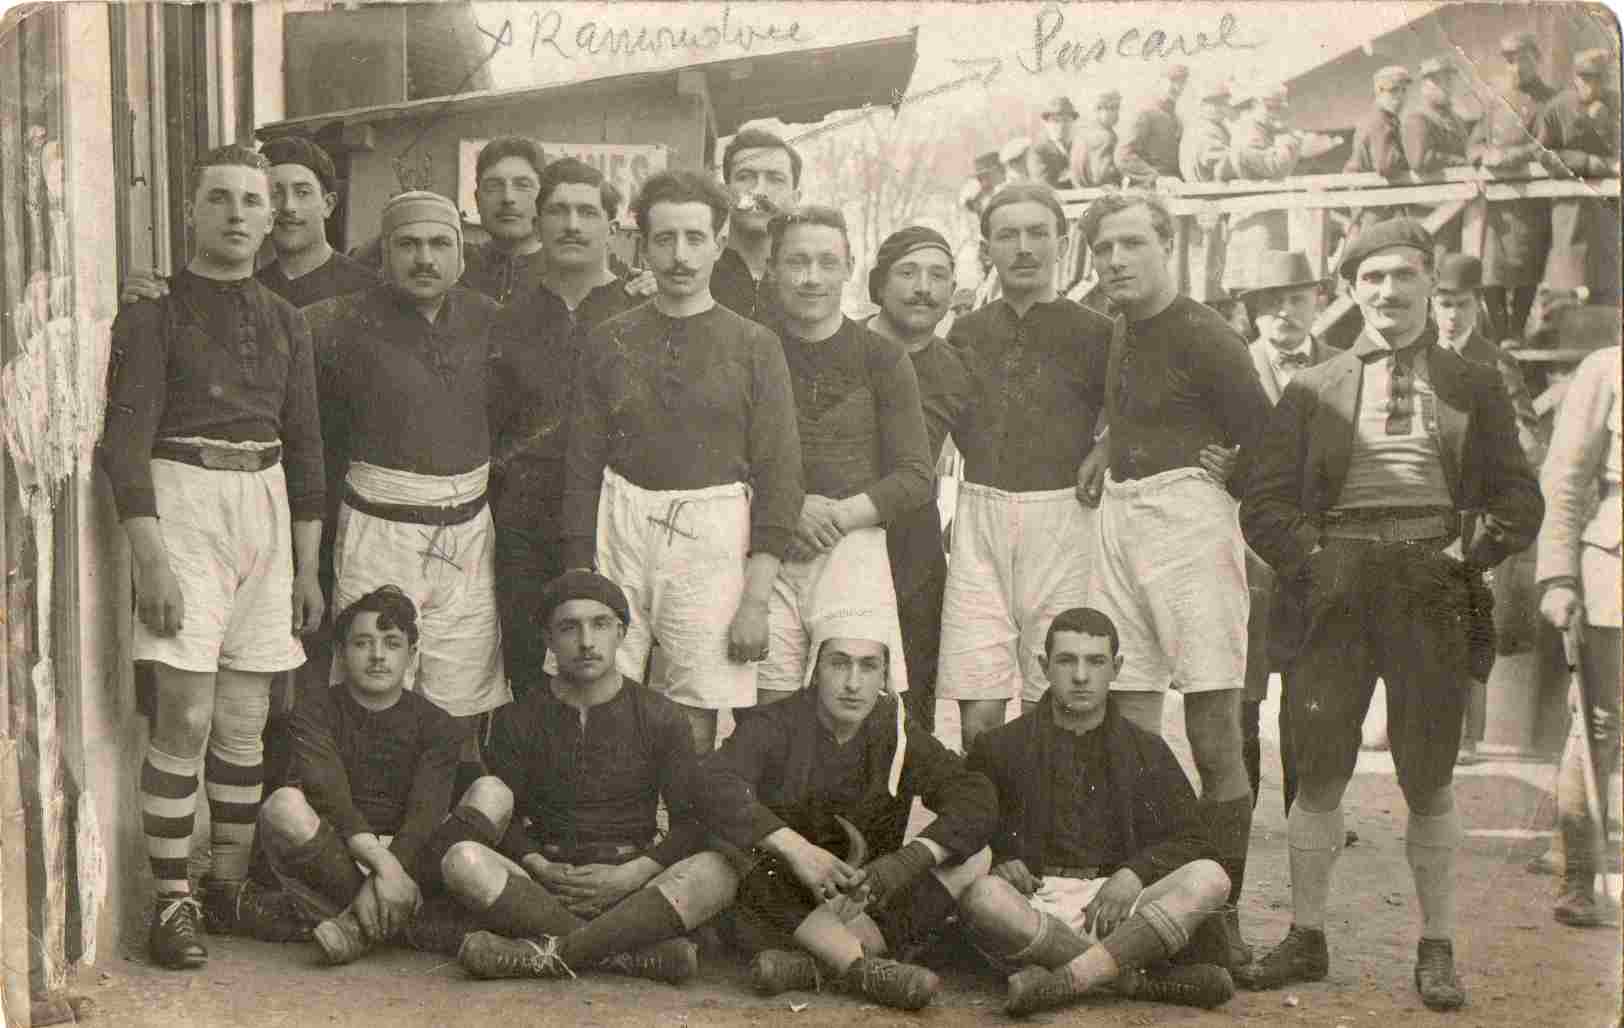 Equipe du Stade 29 04 1917 Toulouse-Tarbes.jpg